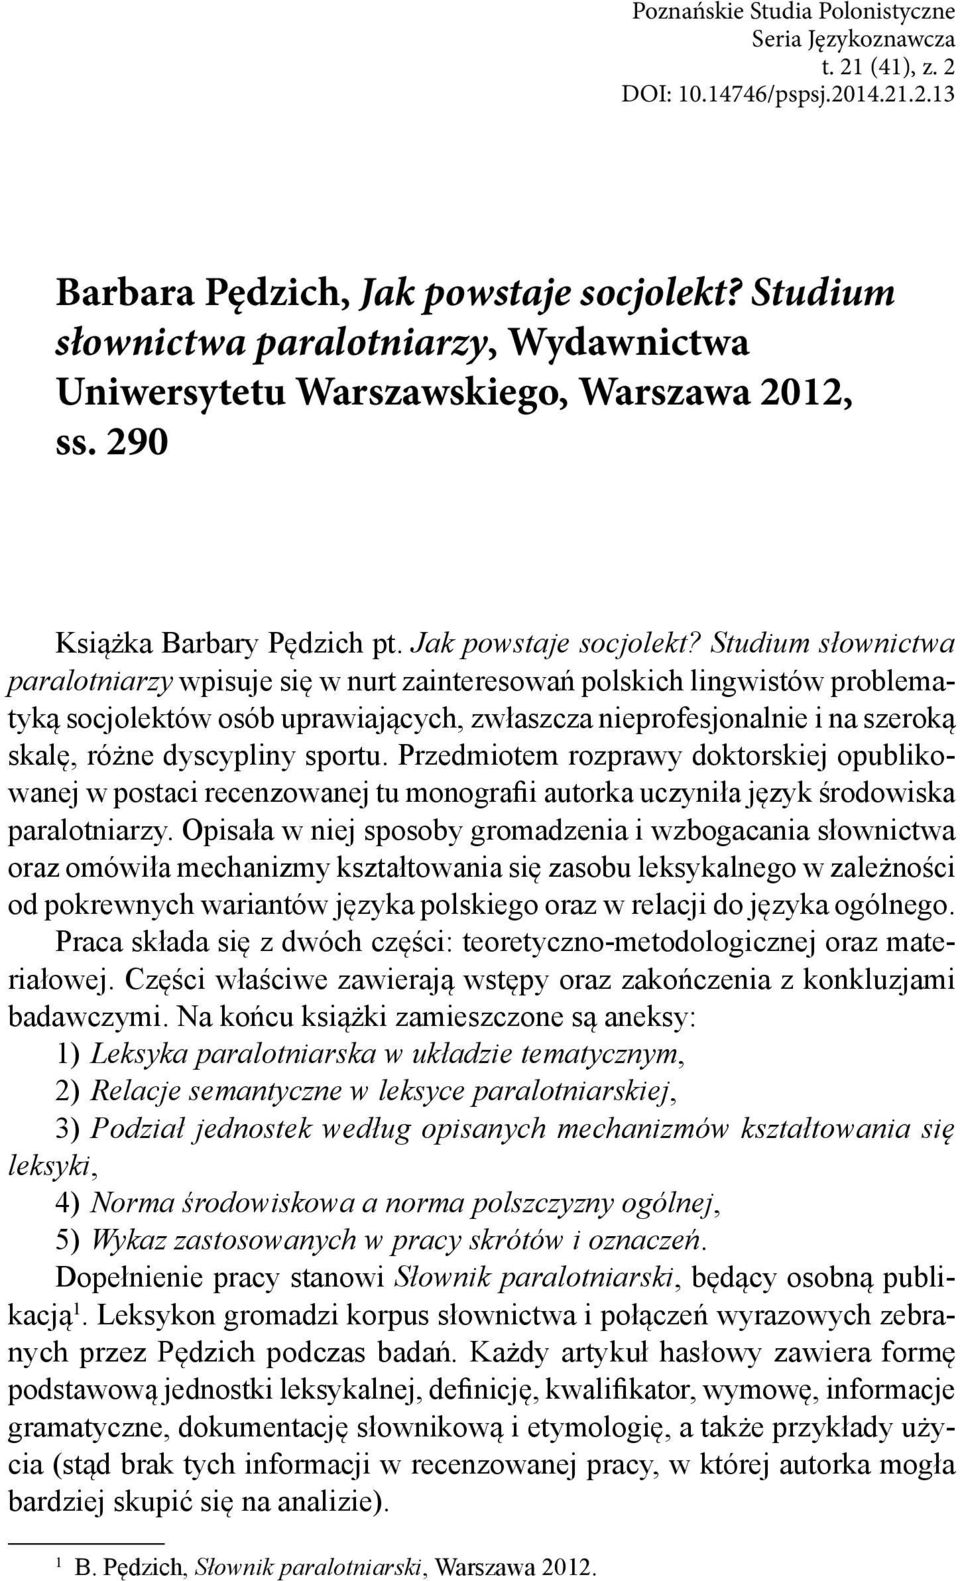 Studium słownictwa paralotniarzy wpisuje się w nurt zainteresowań polskich lingwistów problematyką socjolektów osób uprawiających, zwłaszcza nieprofesjonalnie i na szeroką skalę, różne dyscypliny